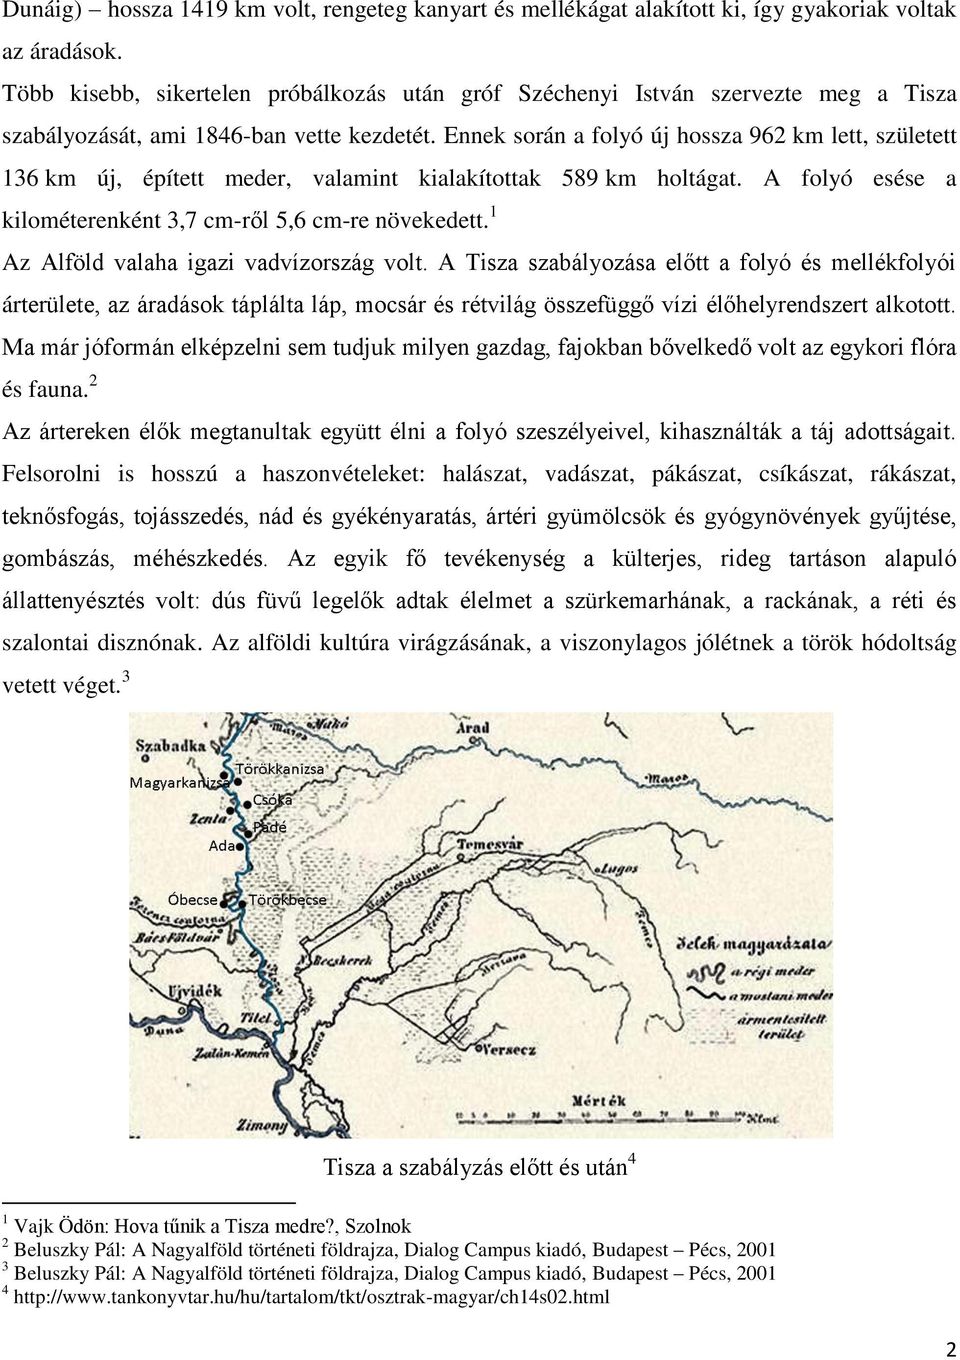 Ennek során a folyó új hossza 962 km lett, született 136 km új, épített meder, valamint kialakítottak 589 km holtágat. A folyó esése a kilométerenként 3,7 cm-ről 5,6 cm-re növekedett.